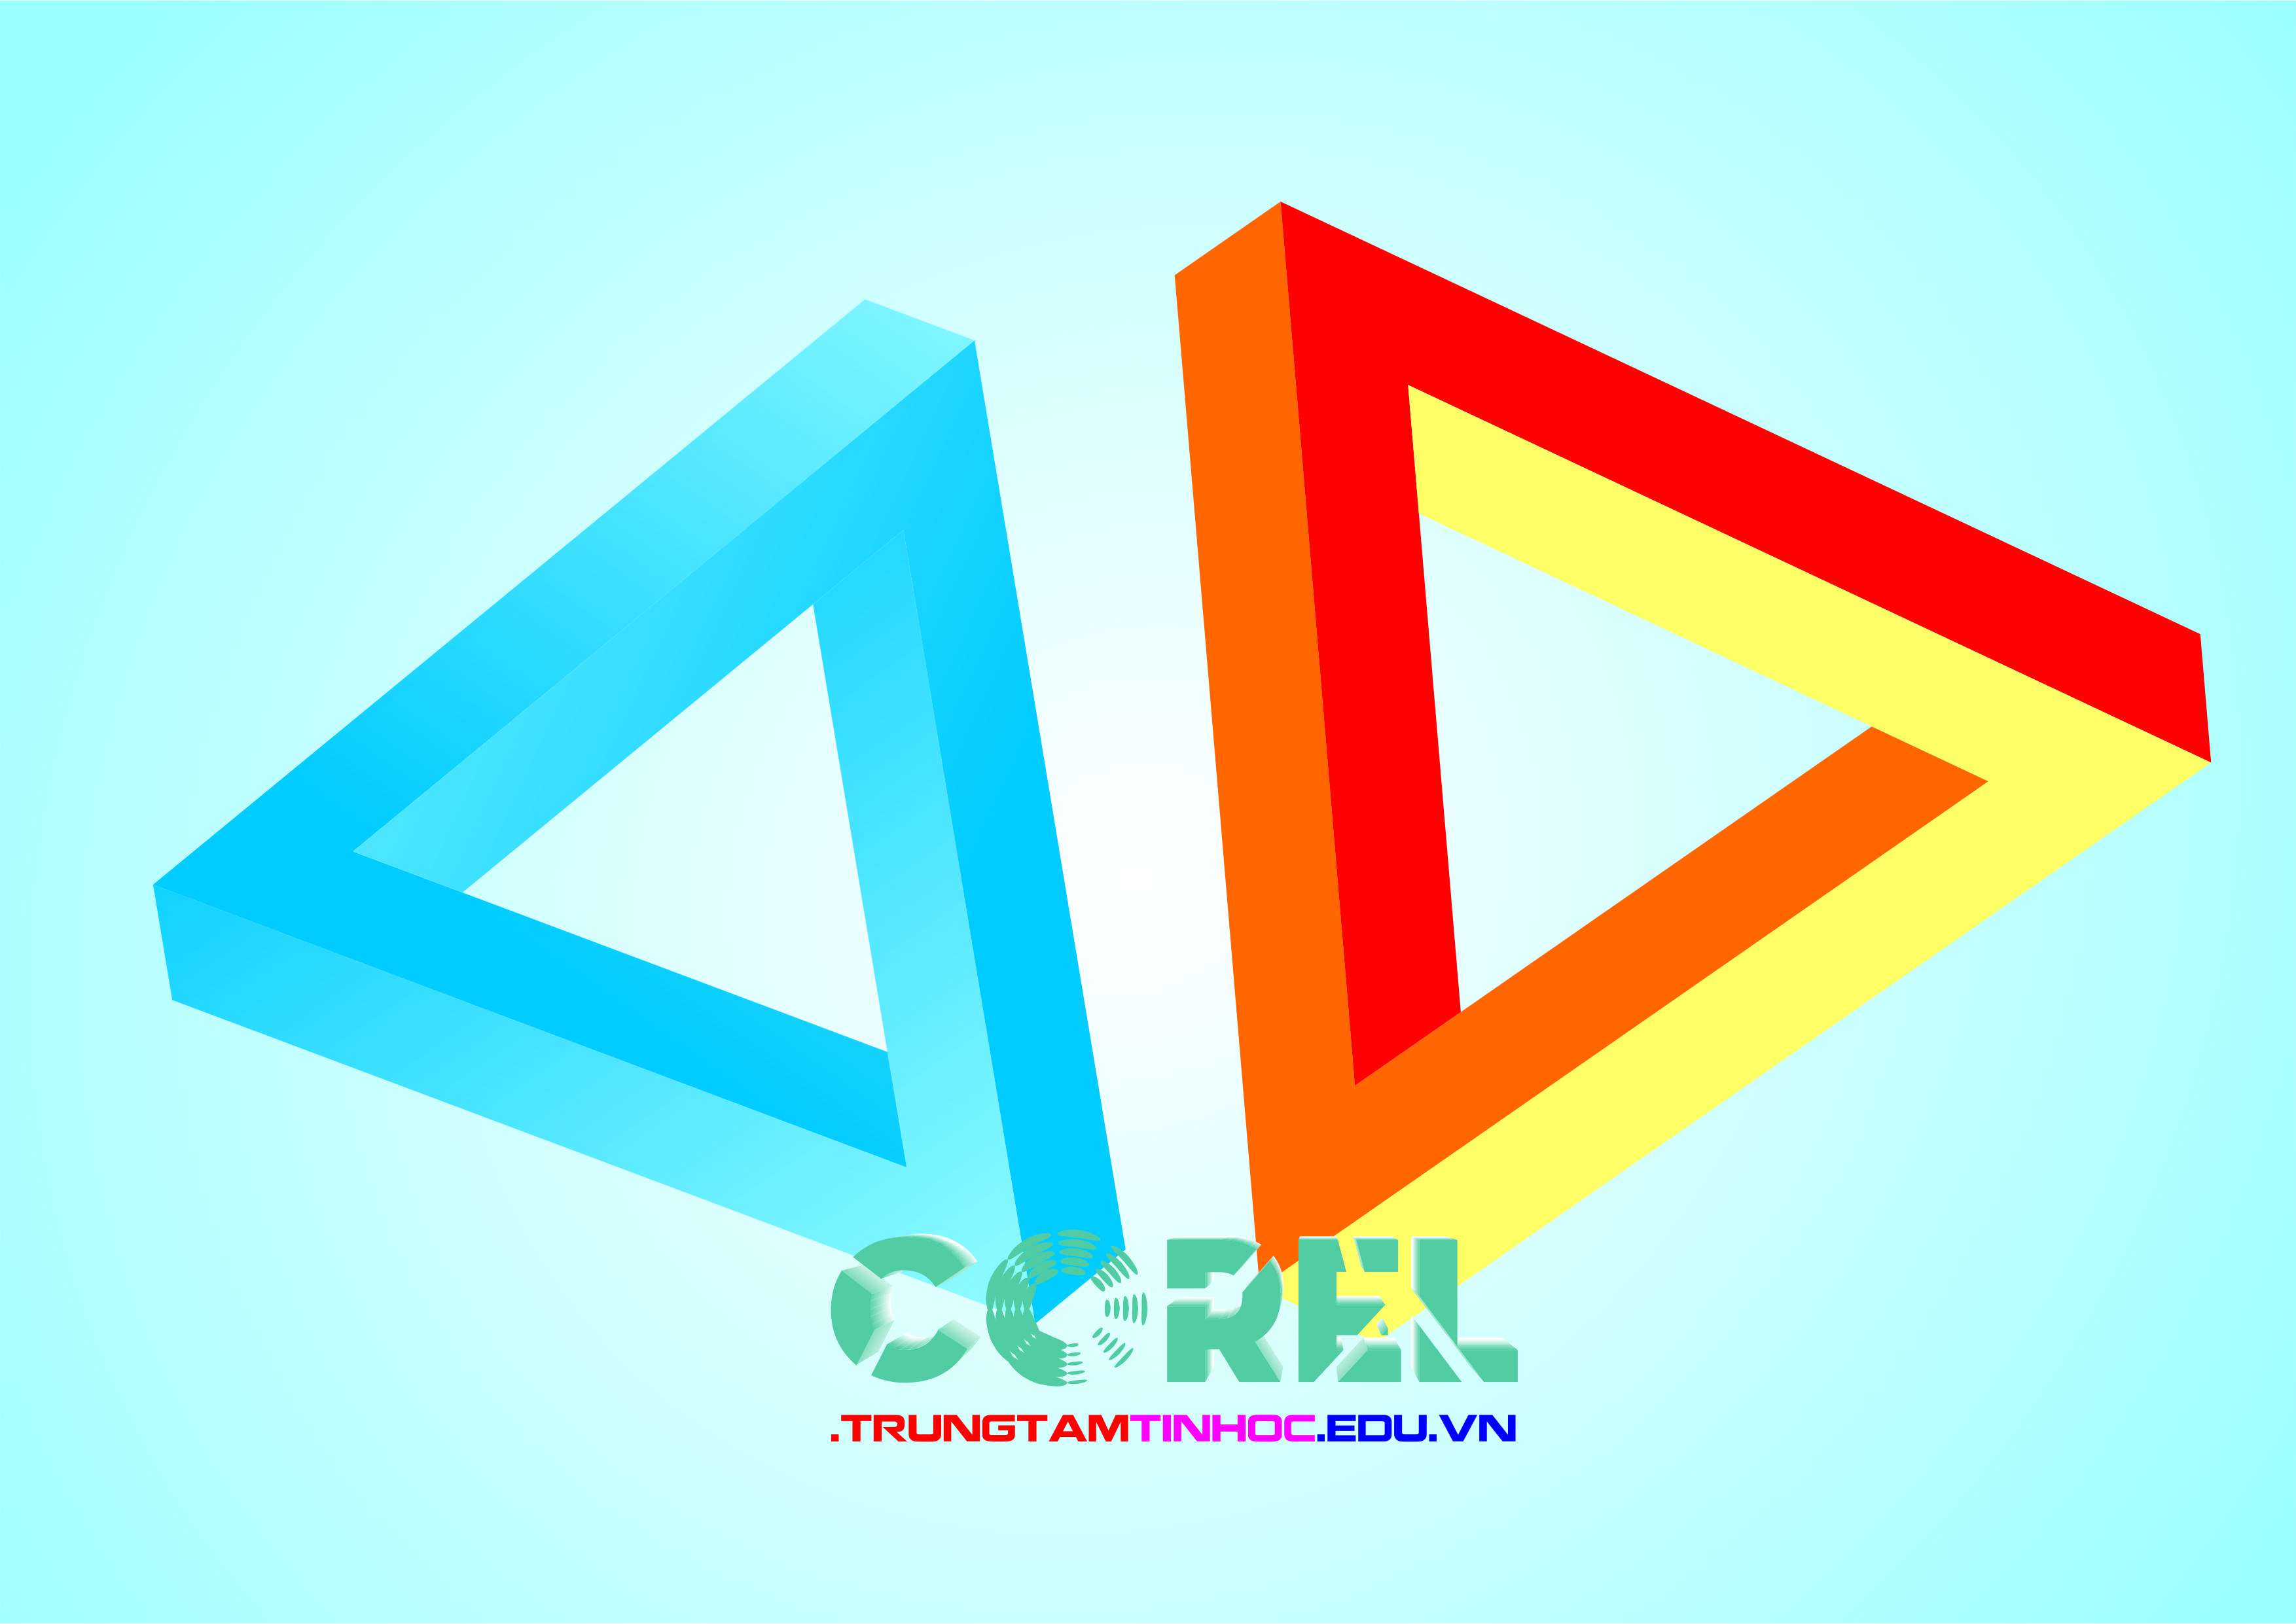 Logo 3D là một kiểu thiết kế logo đặc biệt. Nó giúp bạn tạo ra những hình ảnh sâu và thú vị hơn so với logo 2D thông thường. Với phần mềm Corel, bạn sẽ có nhiều tính năng để thiết kế các logo 3D đẹp và sắc nét. Hãy xem ảnh liên quan để khám phá thêm về logo 3D và phần mềm Corel.